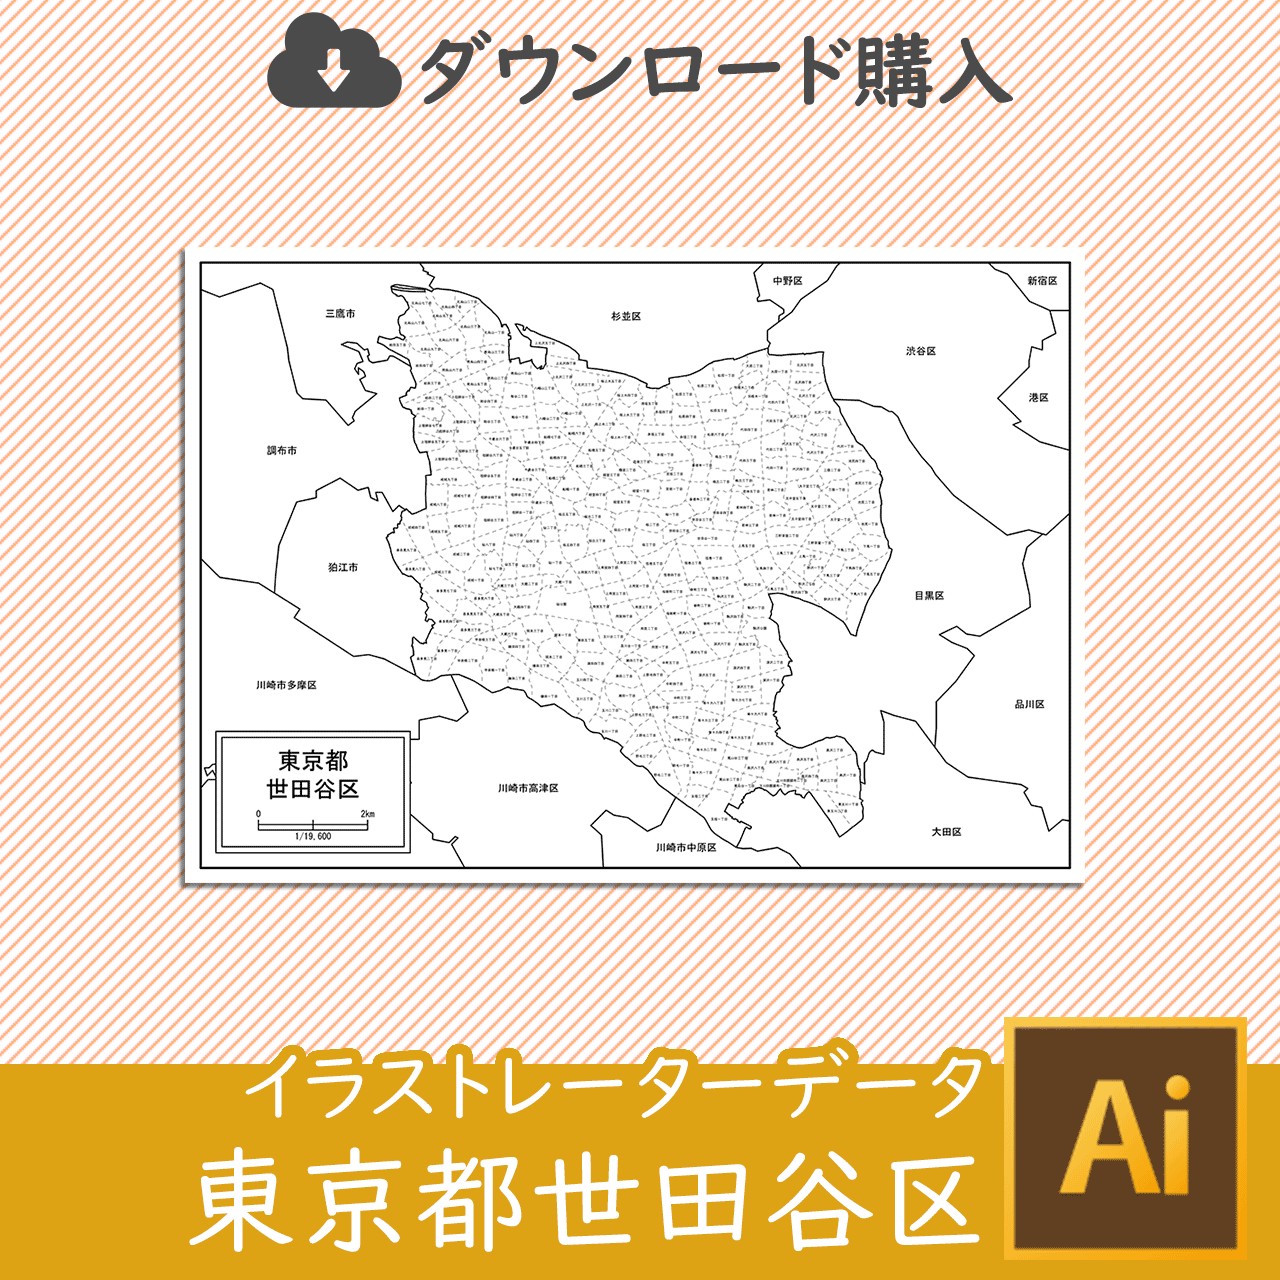 世田谷区の白地図のサムネイル画像